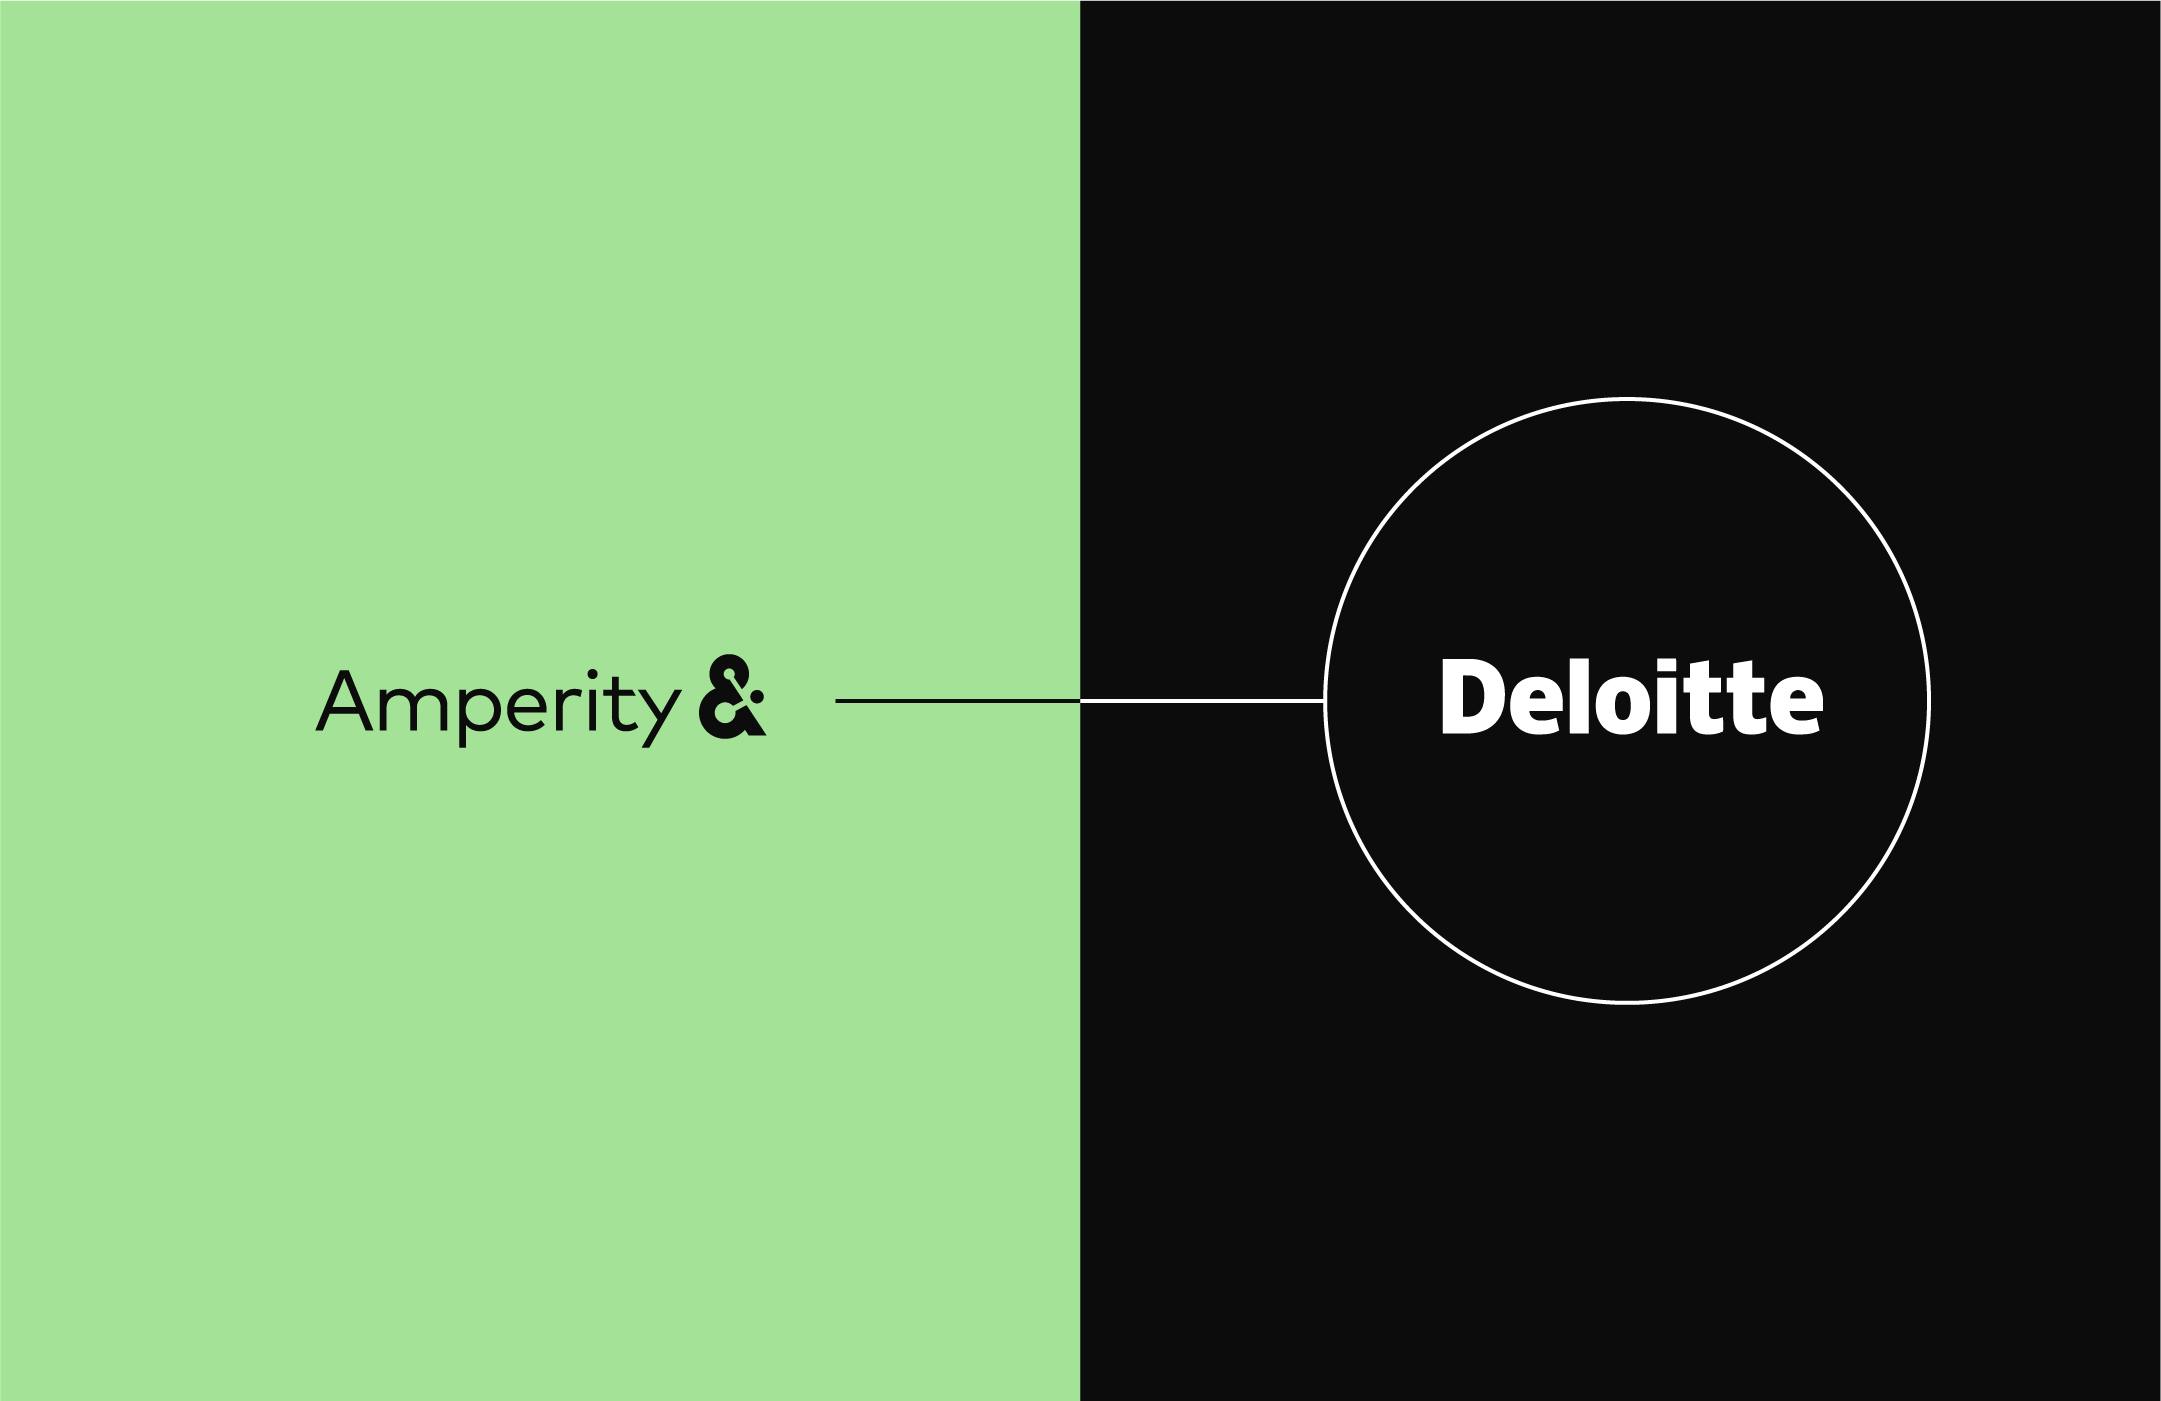 Amperity & Deloitte